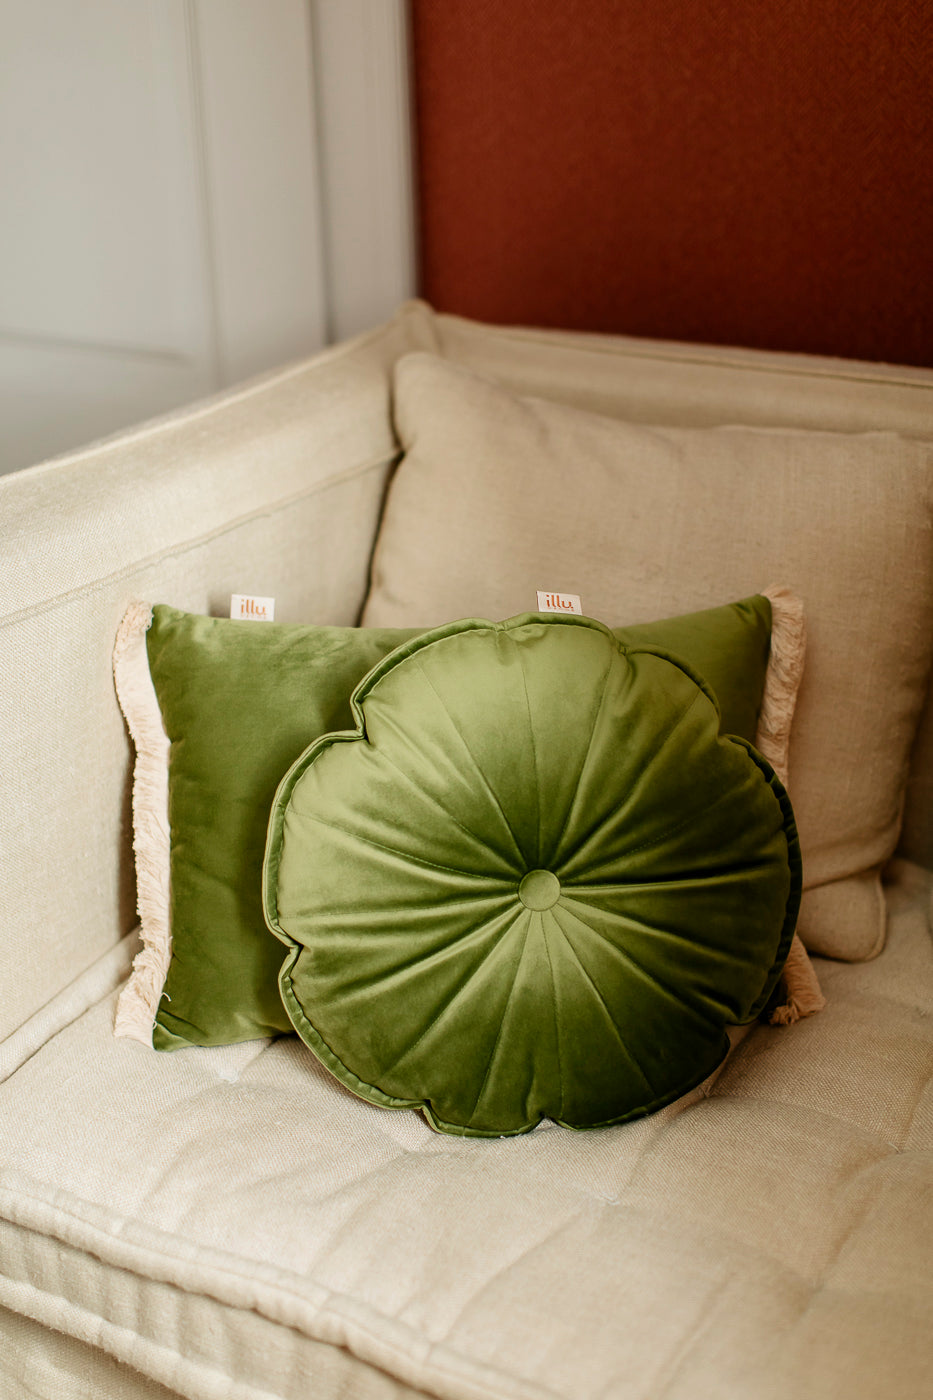 velvet cushions on an armchair